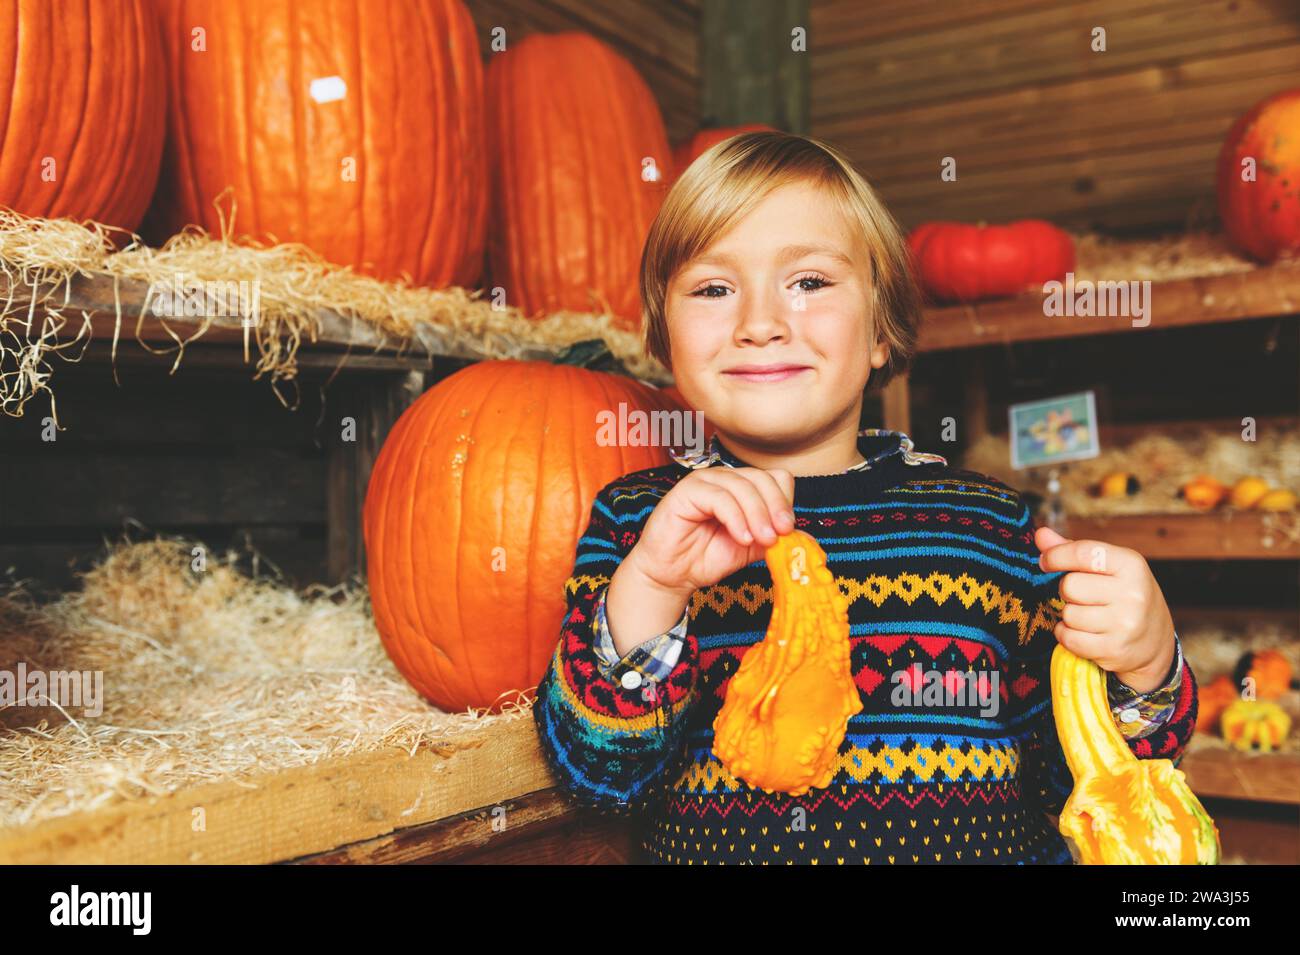 Adorable petit garçon de 5-6 ans choisissant la citrouille halloween sur le marché de la ferme Banque D'Images